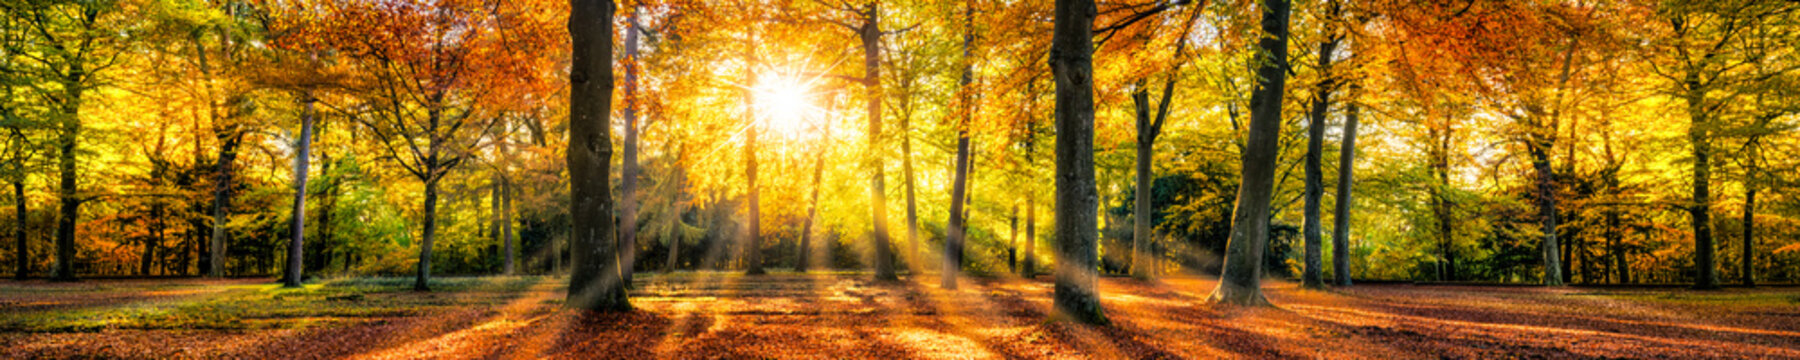 Fototapeta Kolorowej jesieni lasowa panorama w świetle słonecznym